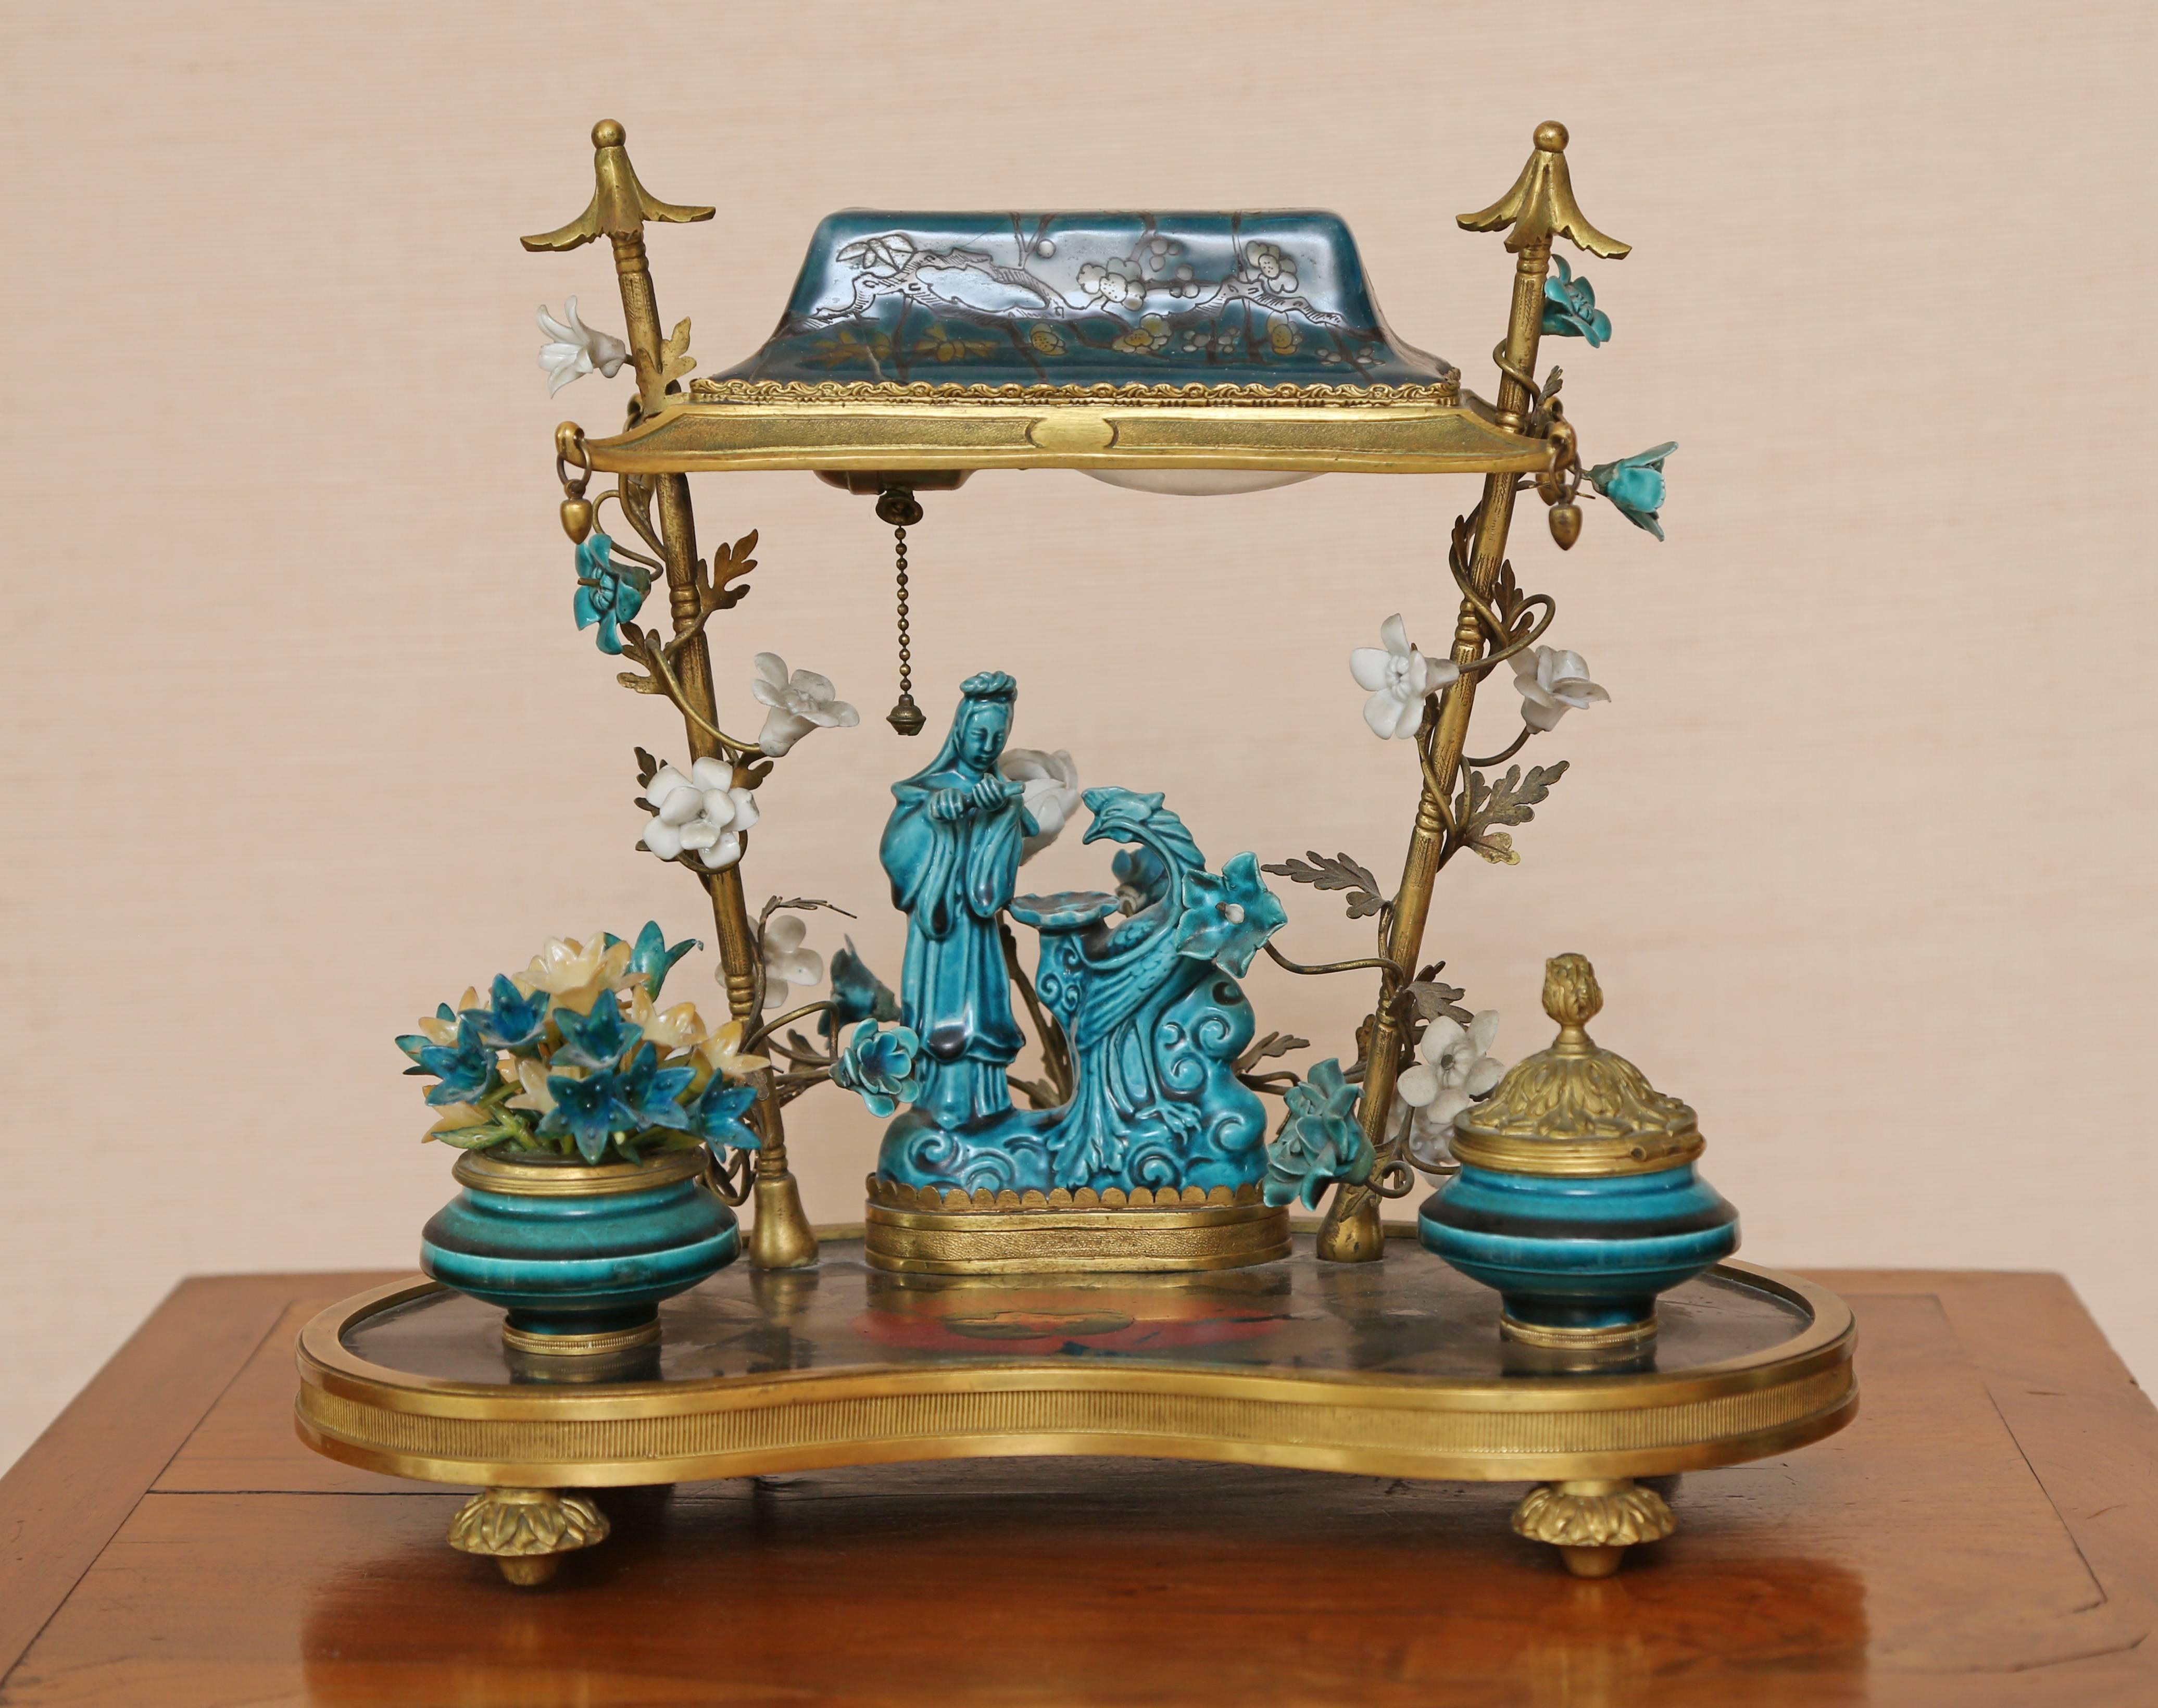 Le dessous du palanquin décoré de fleurs de cerisier formant l'ombre au-dessus du personnage de cour avec phénix reposant sur le panneau Pierre en carton monté en bronze doré.